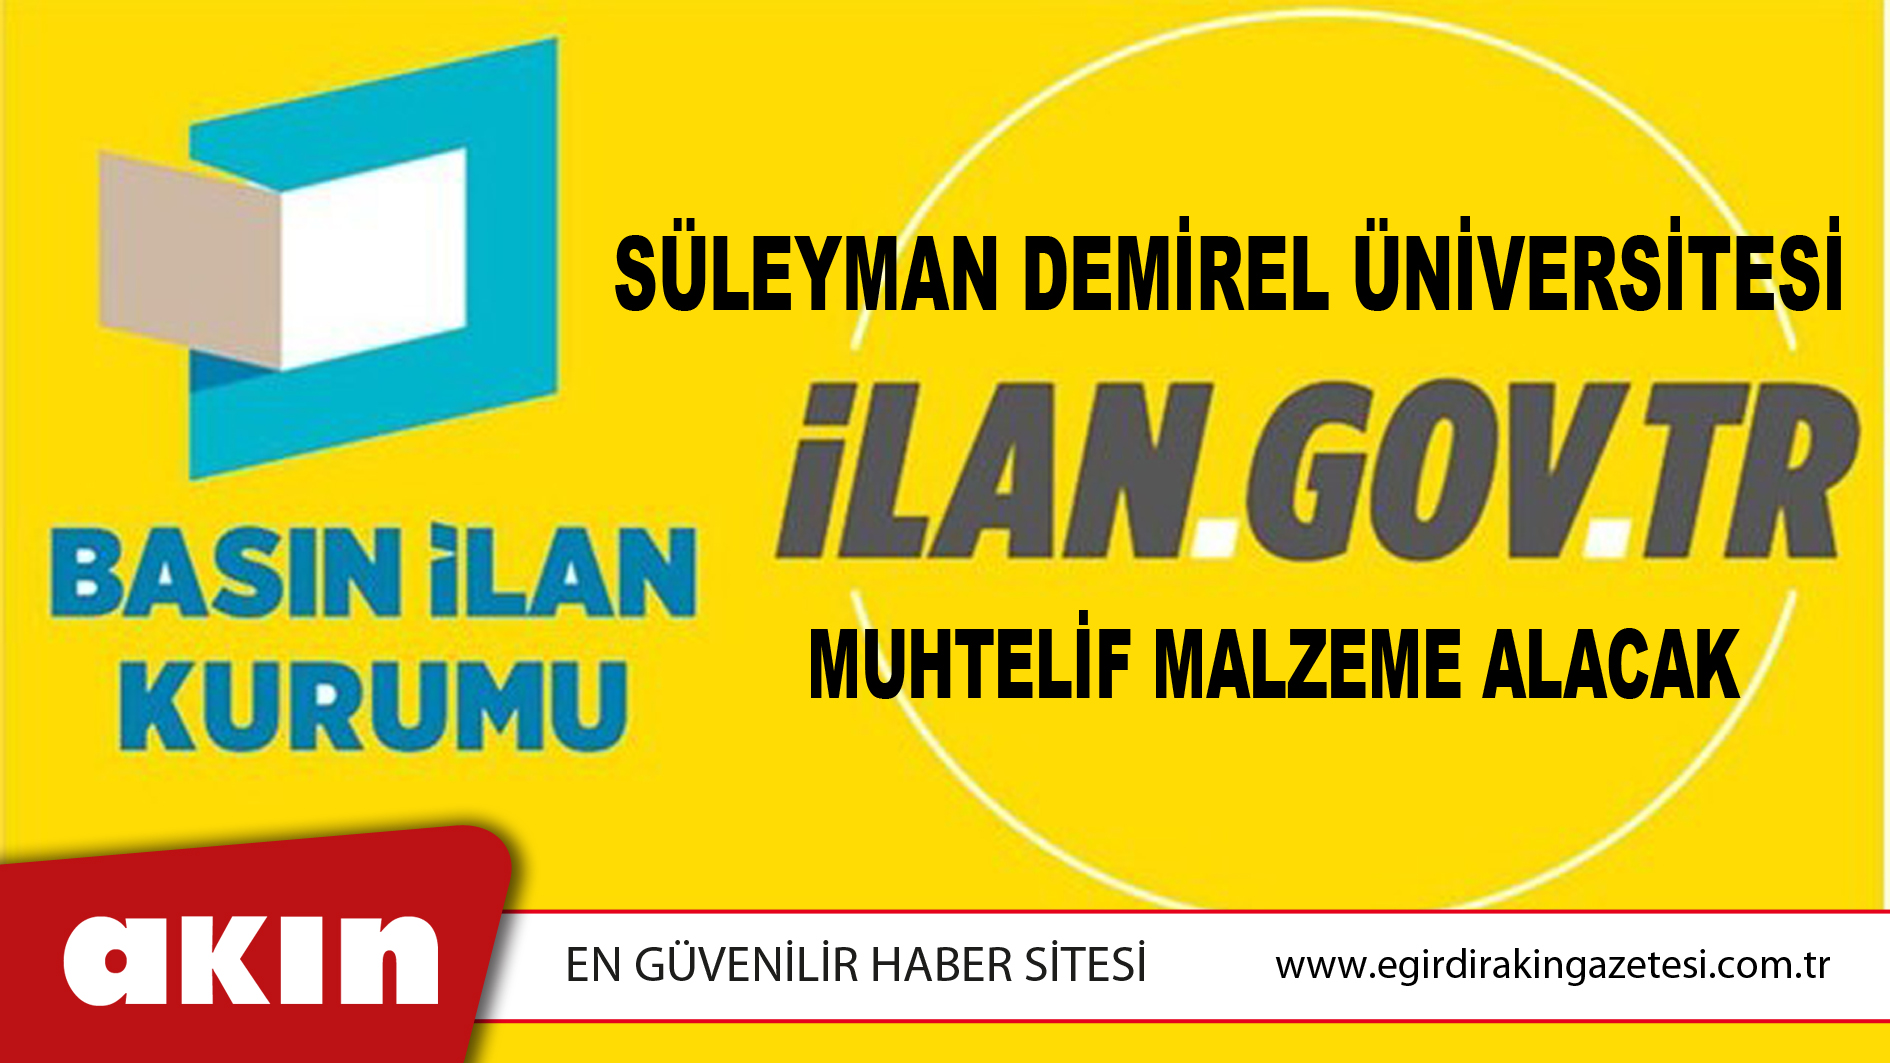 Süleyman Demirel Üniversitesi Muhtelif Malzeme Alacak